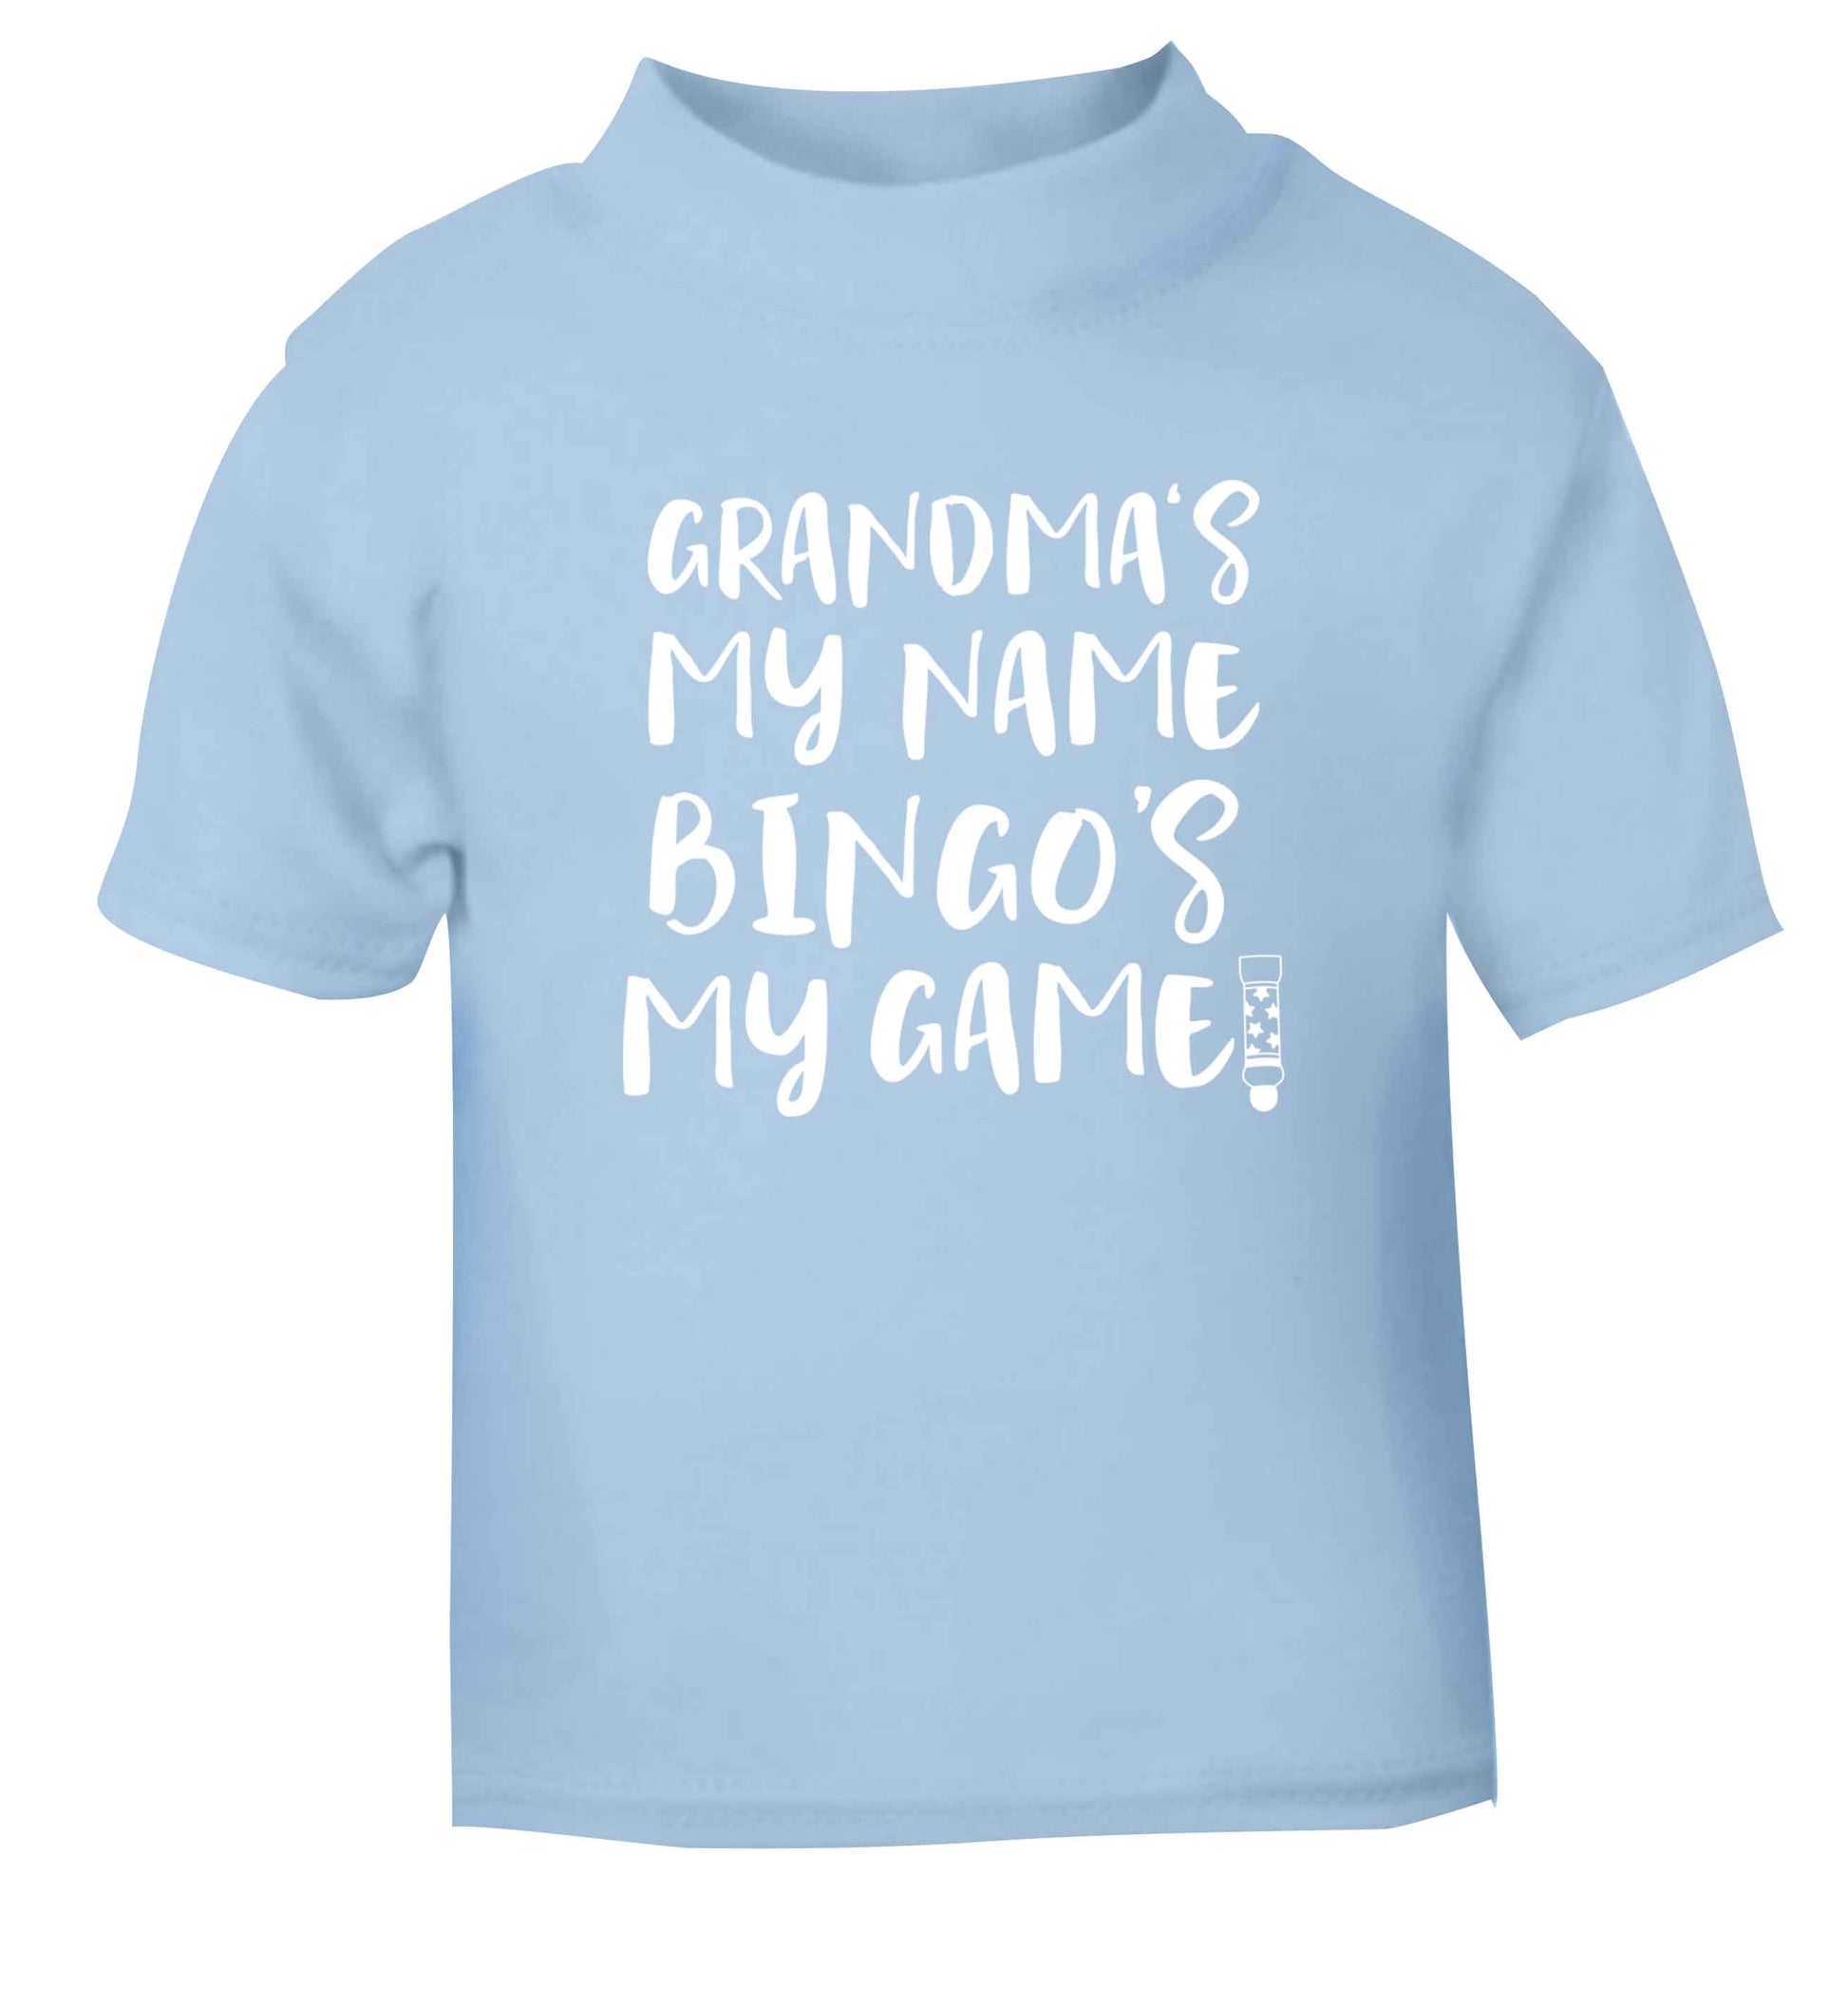 Grandma's my name bingo's my game! light blue Baby Toddler Tshirt 2 Years